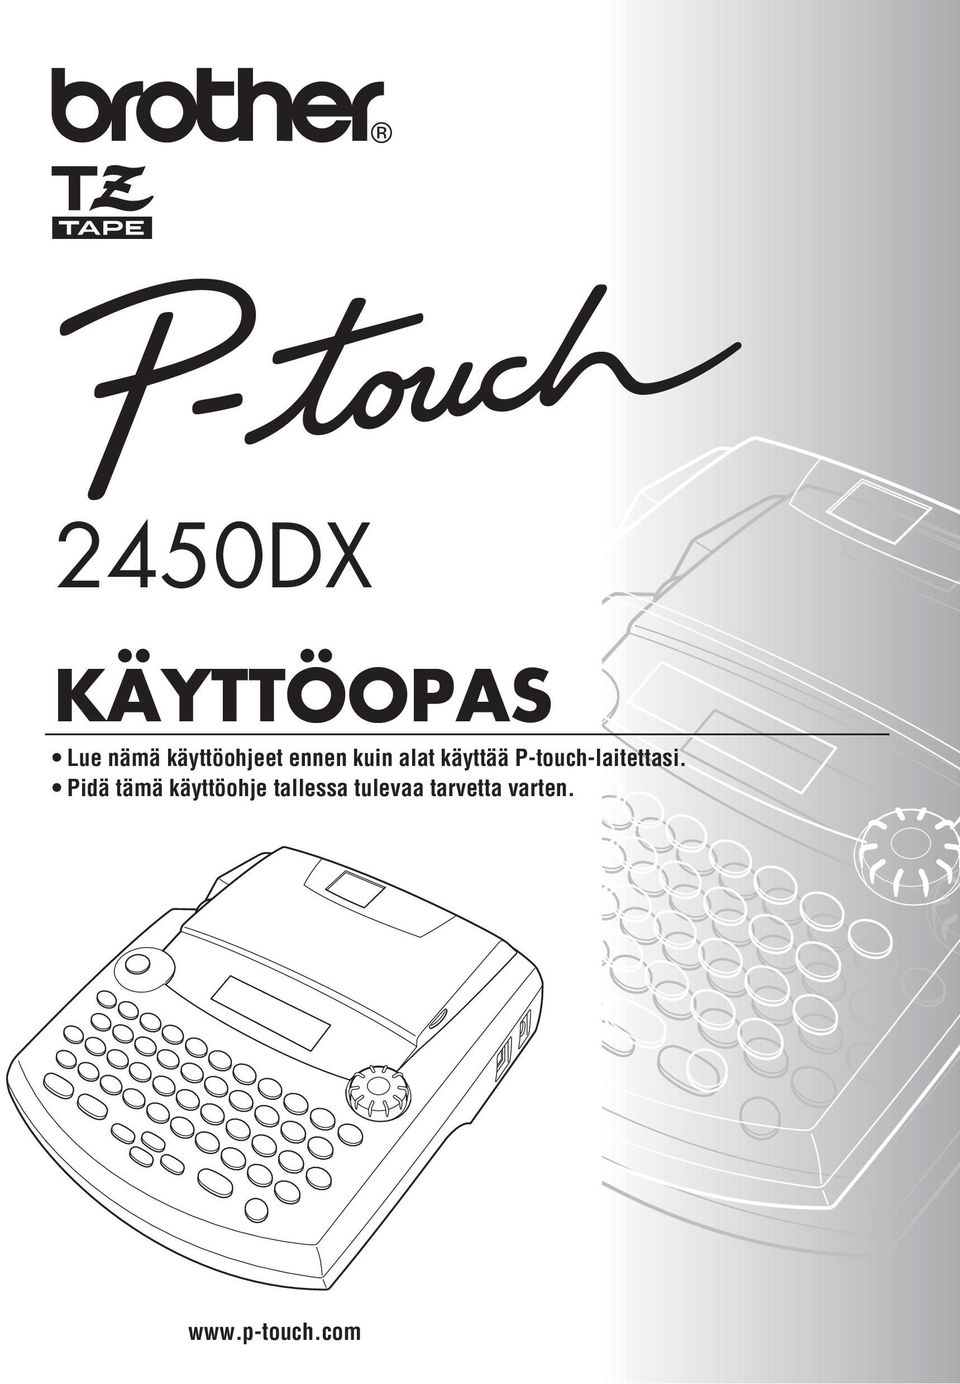 P-touch-laitettasi.